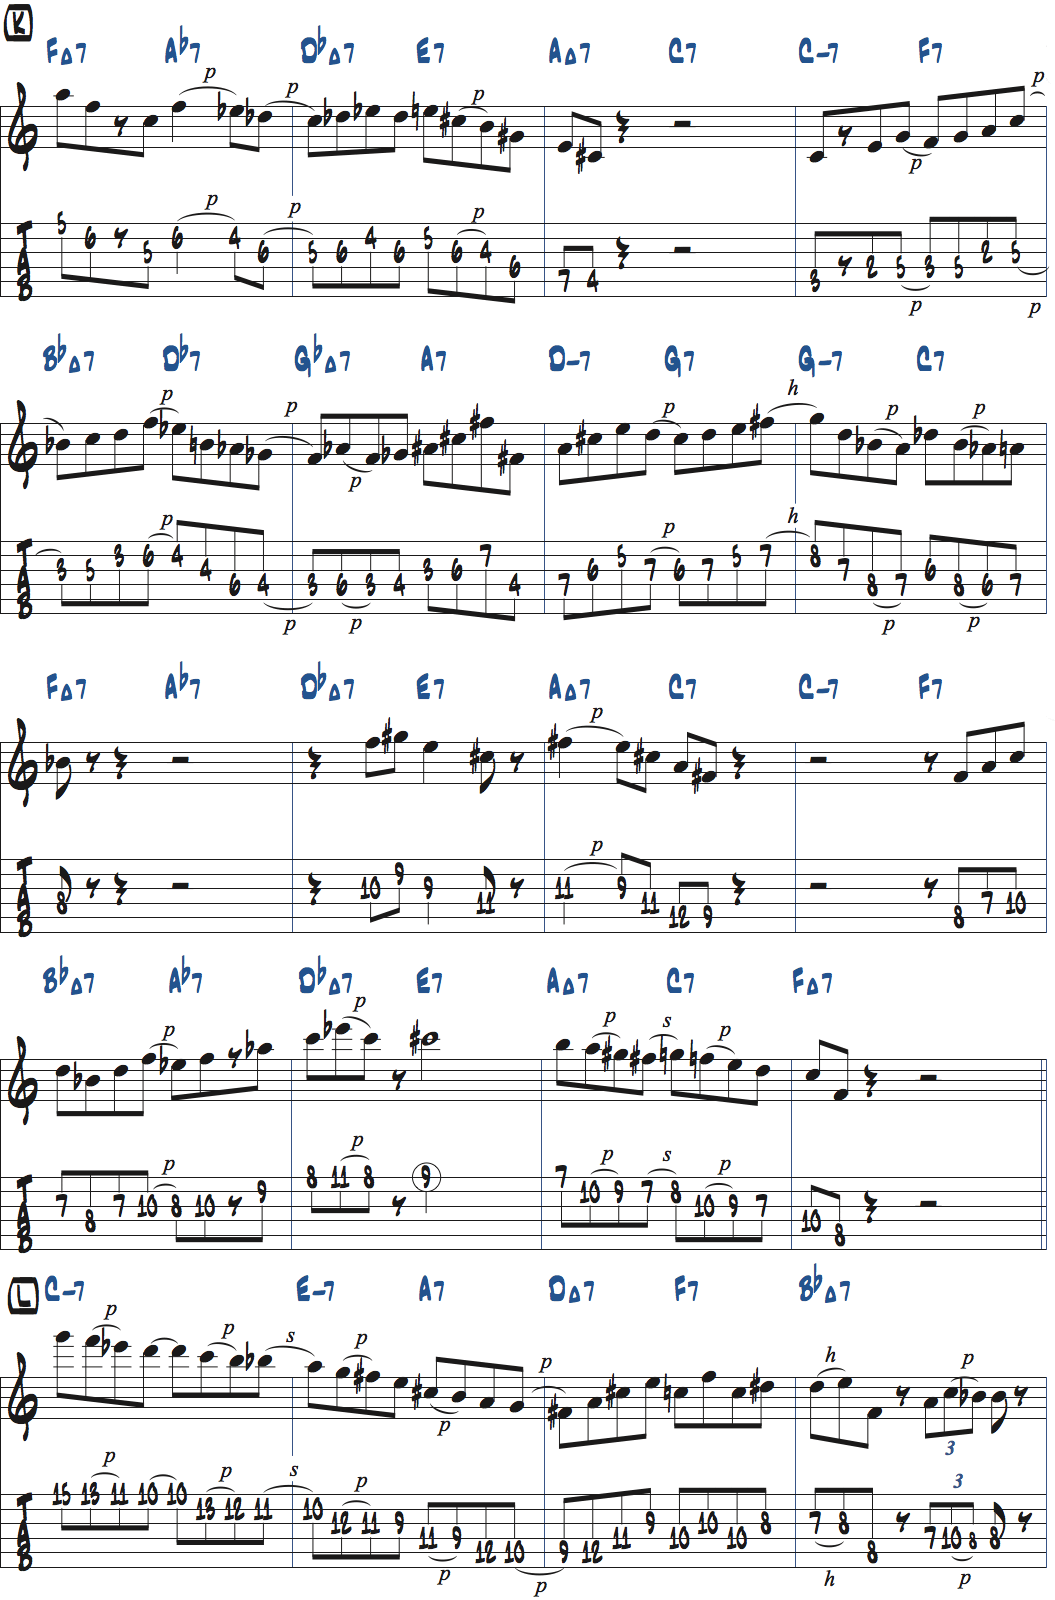 カート・ローゼンウィンケル「26-2」アドリブ3コラース目タブ譜付きギタースコア楽譜ページ1